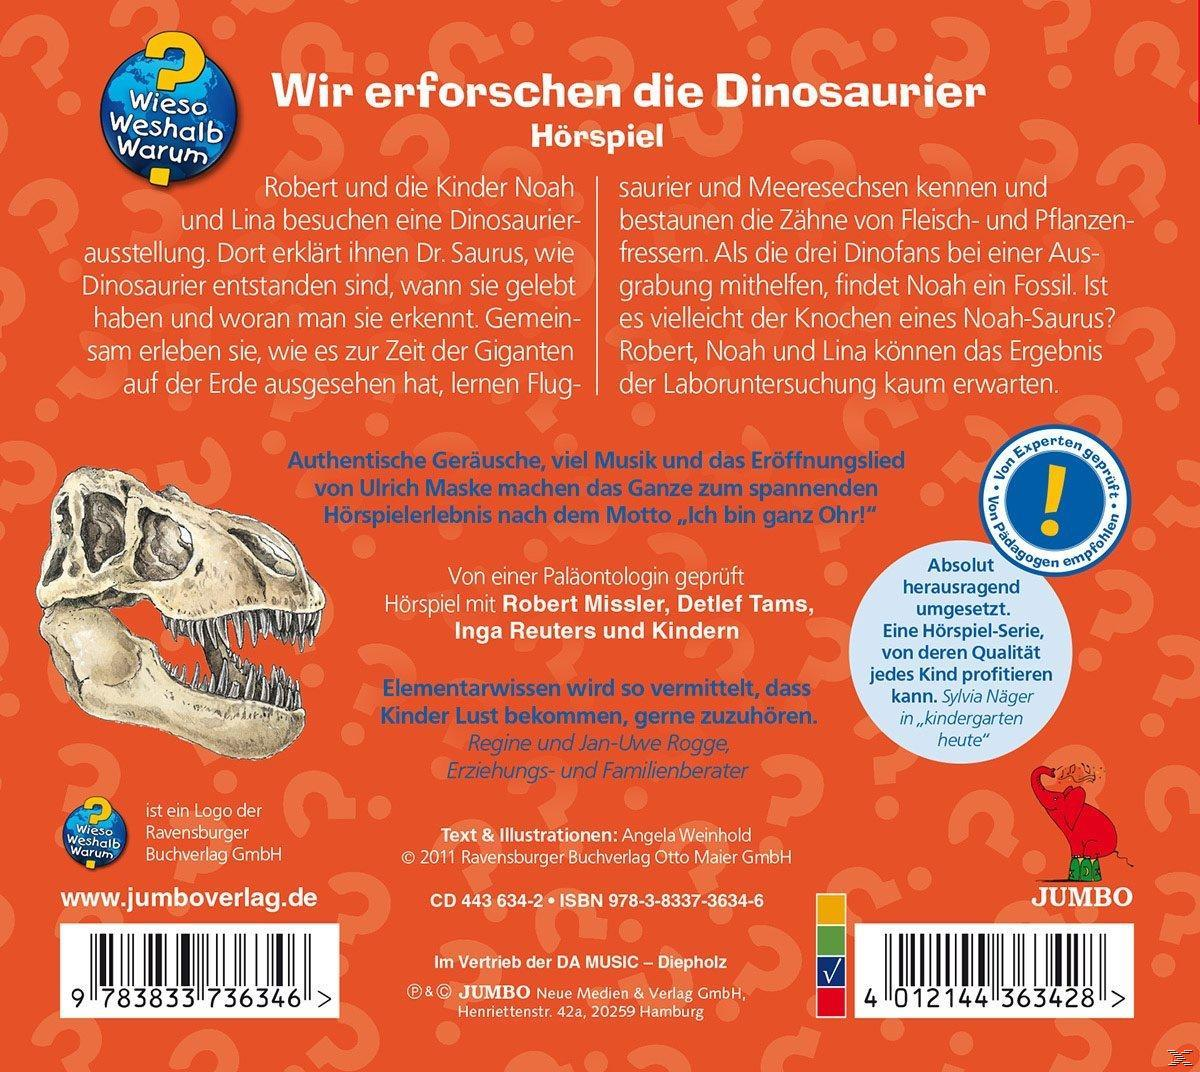 (CD) Wir Dinosaurier - Warum? Wieso? die Weshalb? erforschen